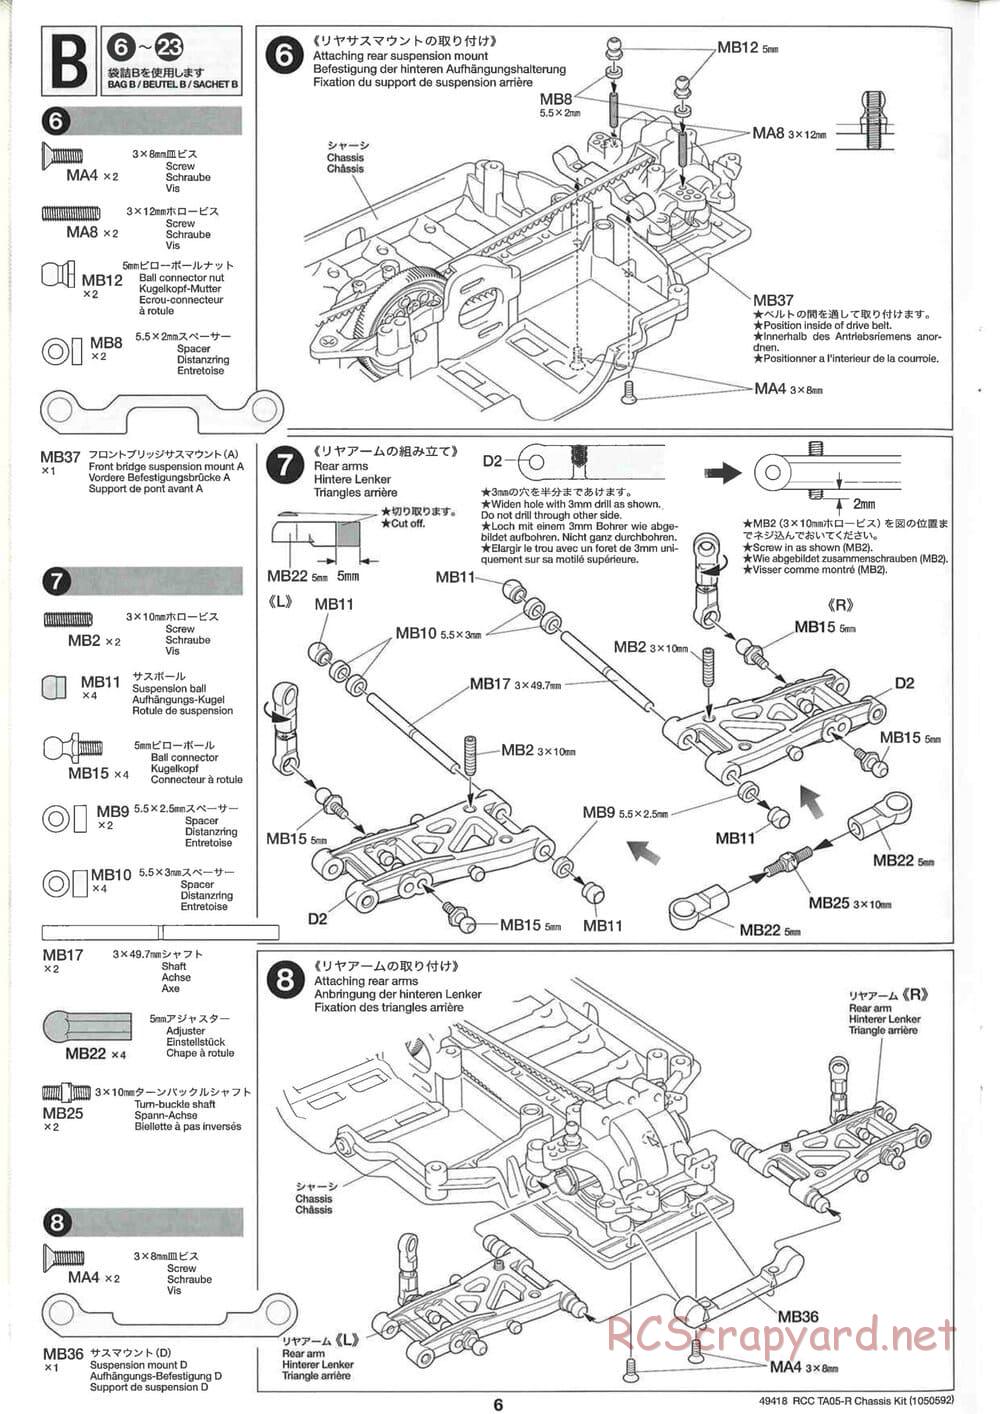 Tamiya - TA05-R Chassis - Manual - Page 6